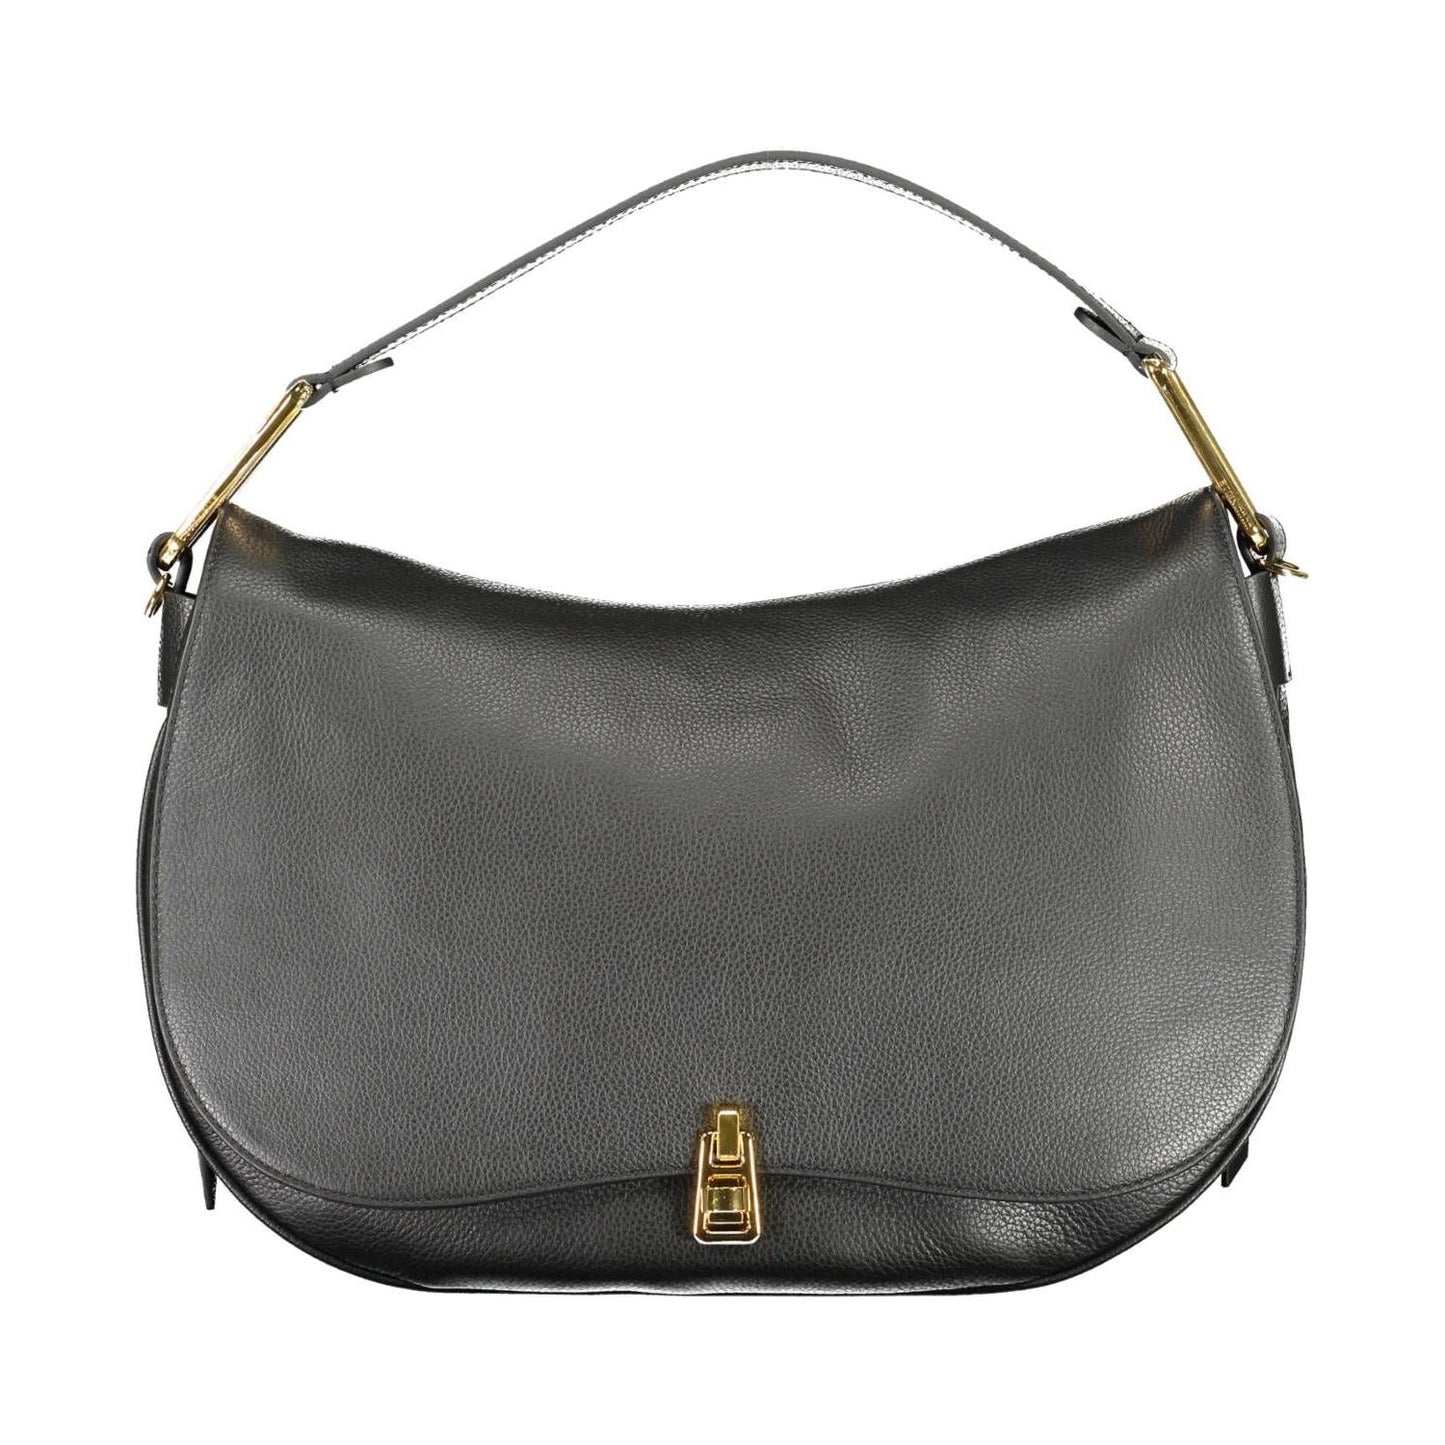 Coccinelle Chic Black Leather Shoulder Bag chic-black-leather-shoulder-bag-1